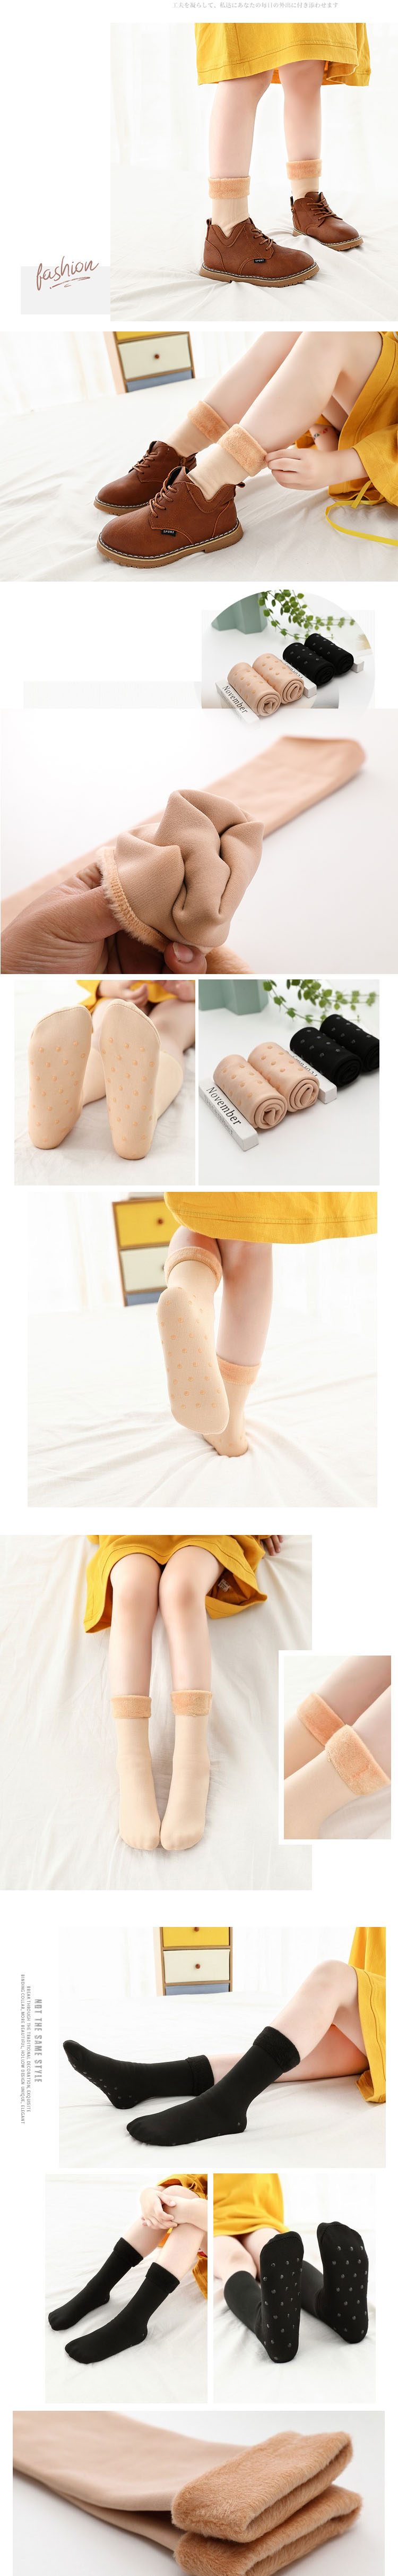 Sock-022 ถุงเท้ากันหนาวเด็ก